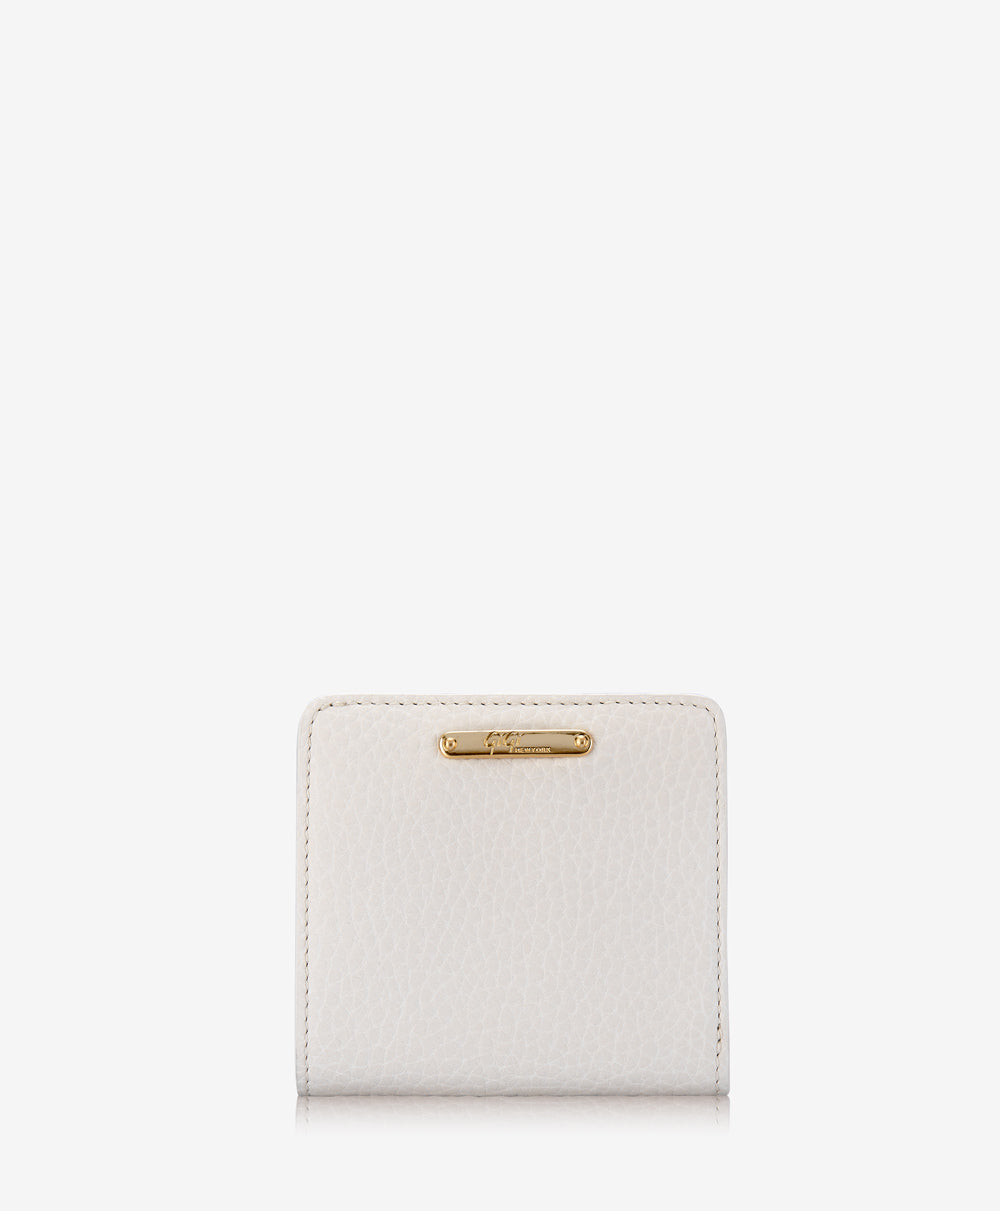 Mini Foldover Wallet | White Pebble Grain Leather